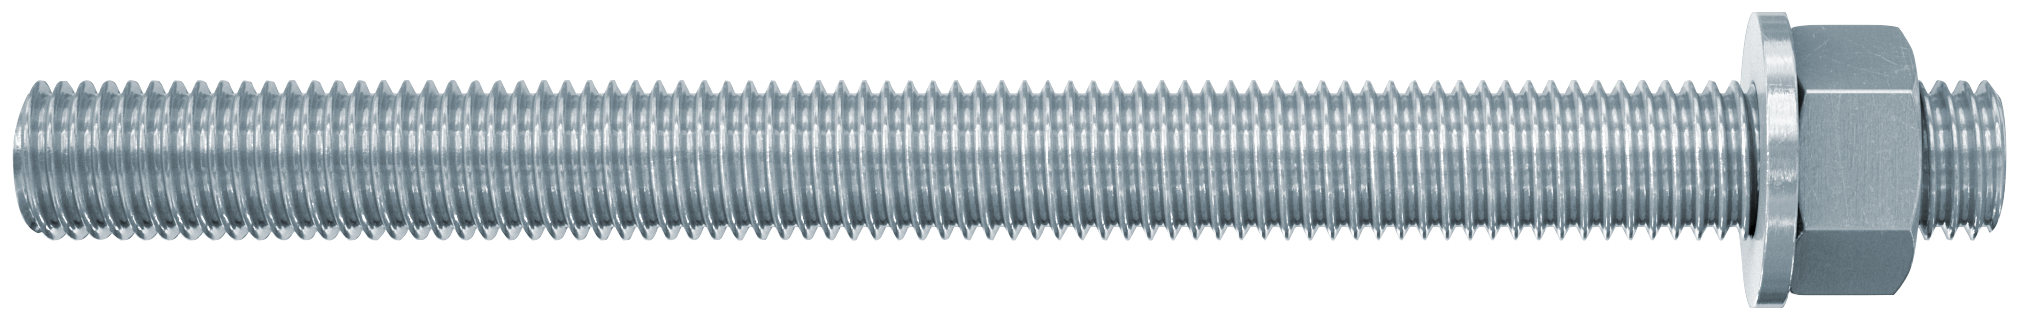 fischer Barre filettate in acciaio FIS A M12X160 8.8 (1 Pz.) Barra filettata in acciaio zincato con classe di resistenza 8.8, con taglio dritto, dado e rosetta.